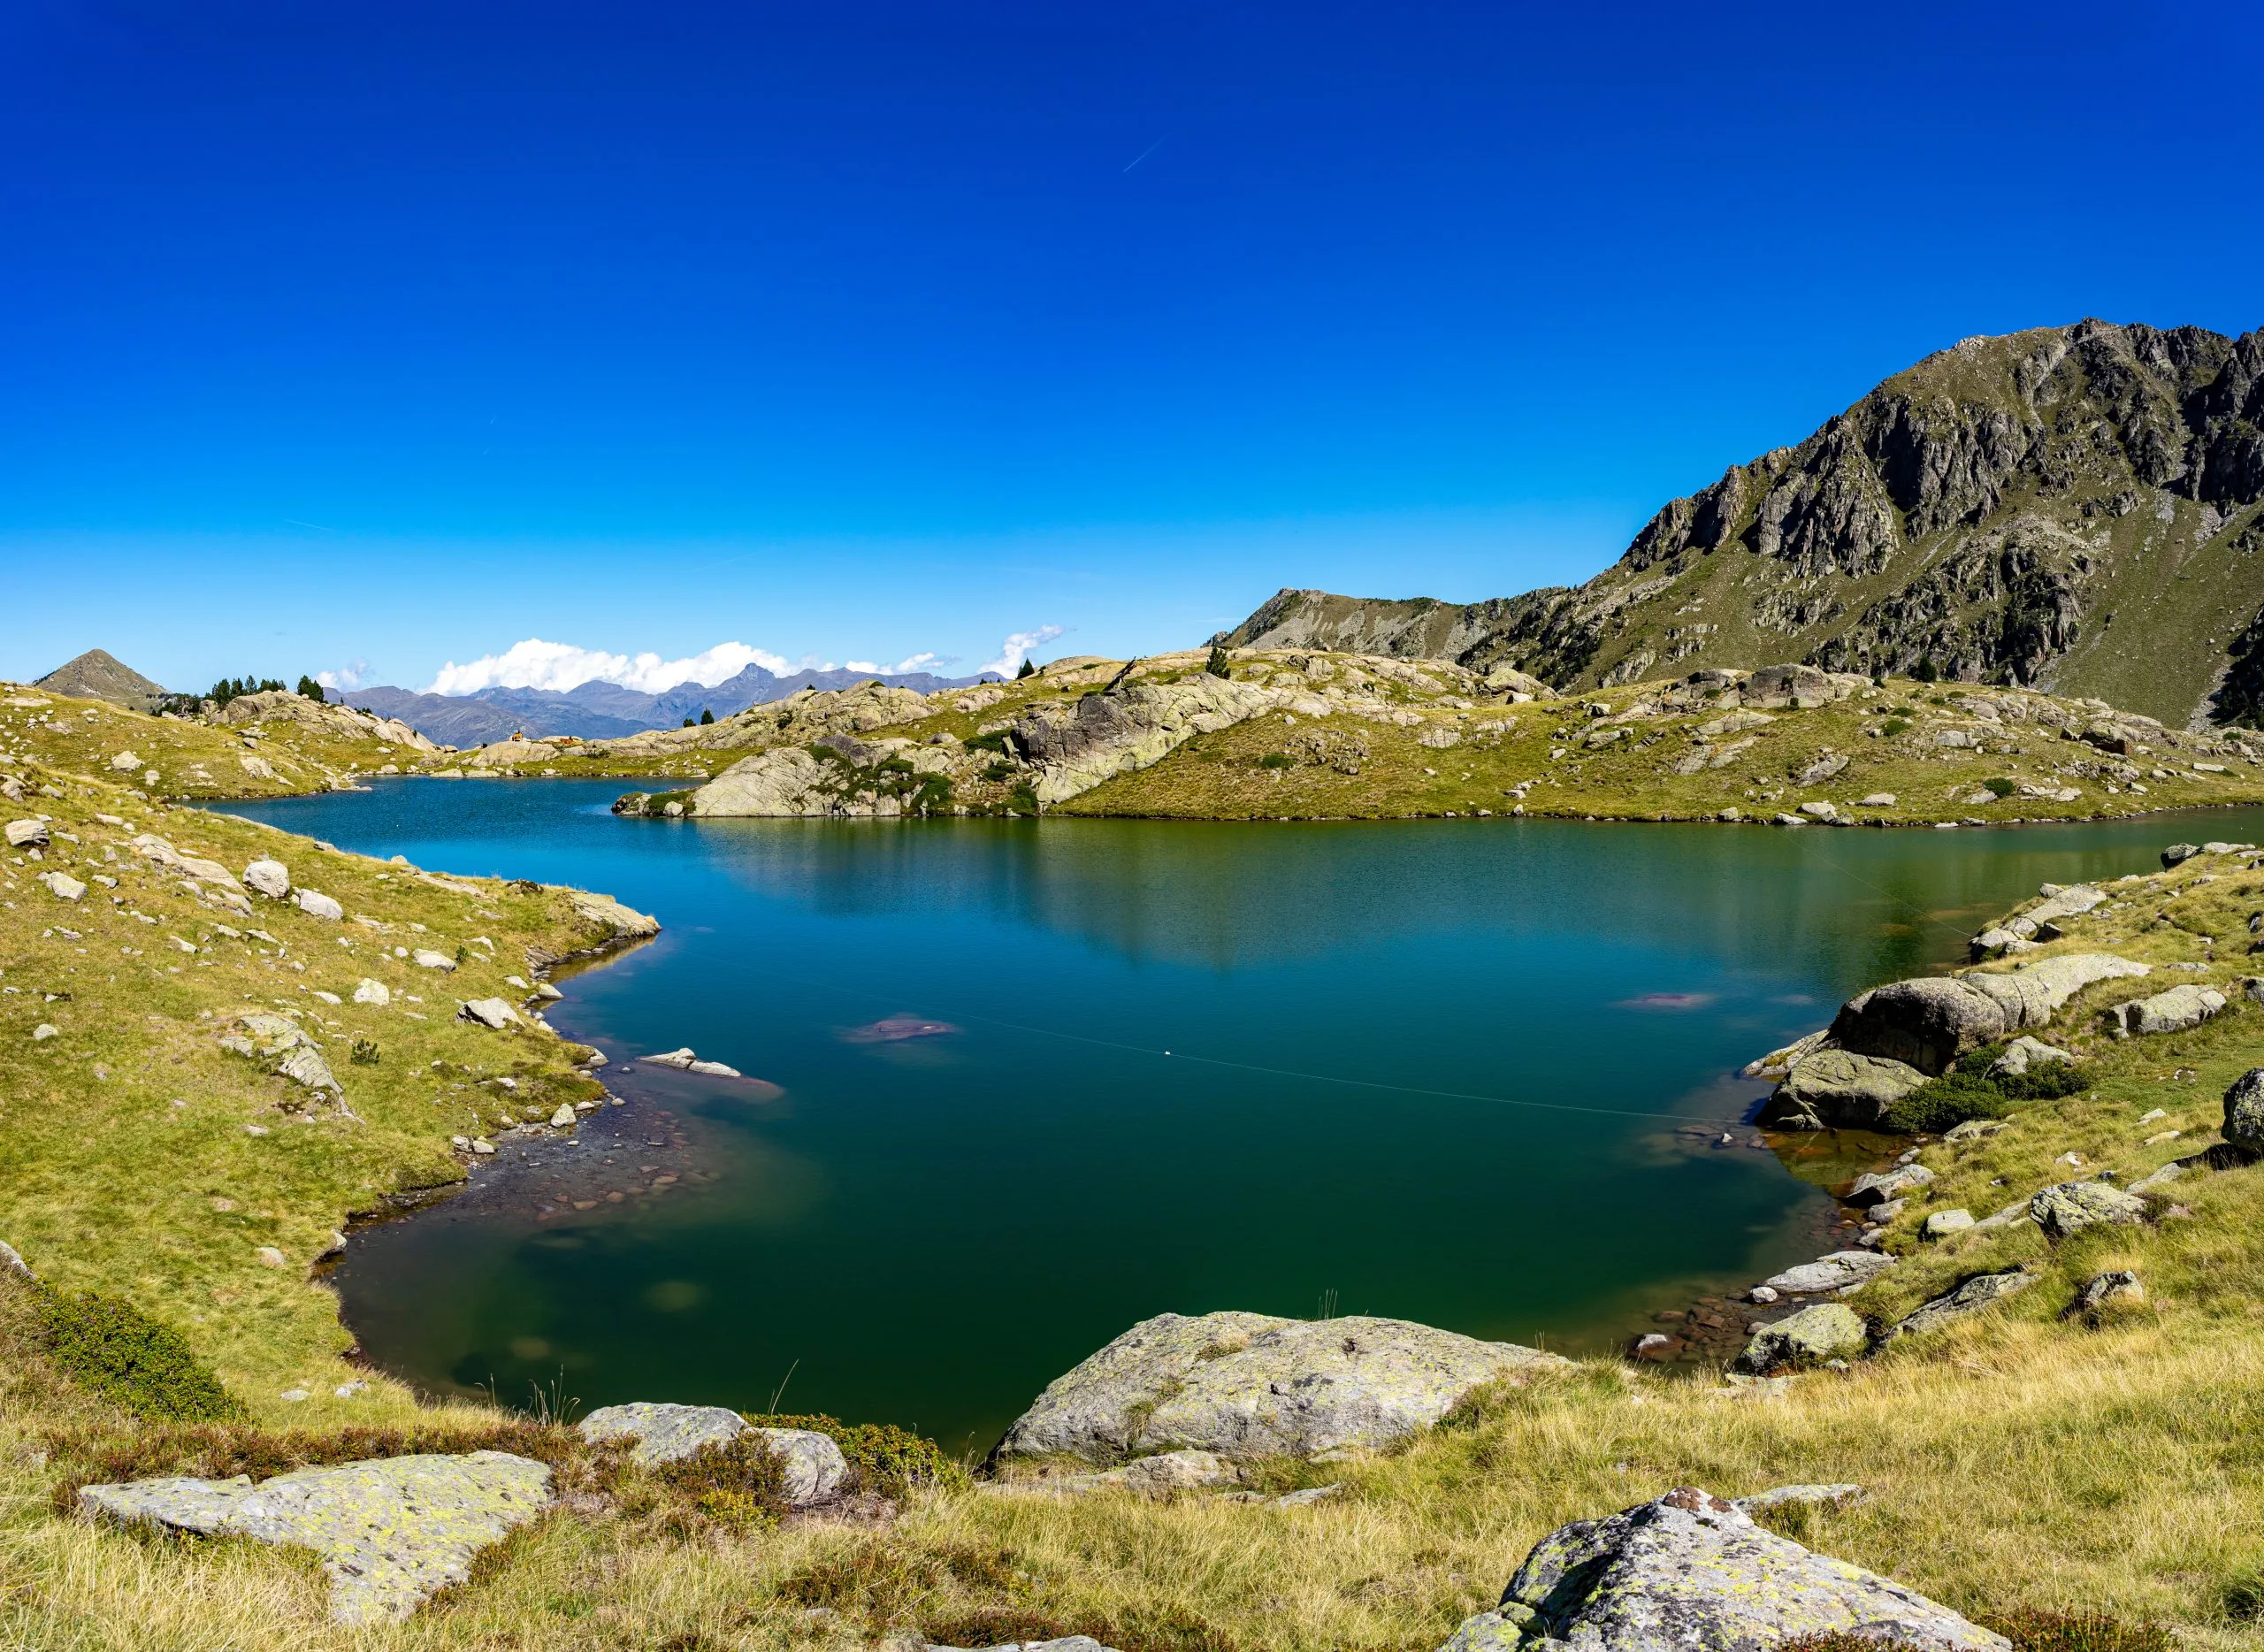 Sommerurlaub in den spanischen Pyrenäen: Wanderung zum Seenkessel von Colomers im berühmten Nationalpark Aigues Tortes - Weitwinkel Panorama